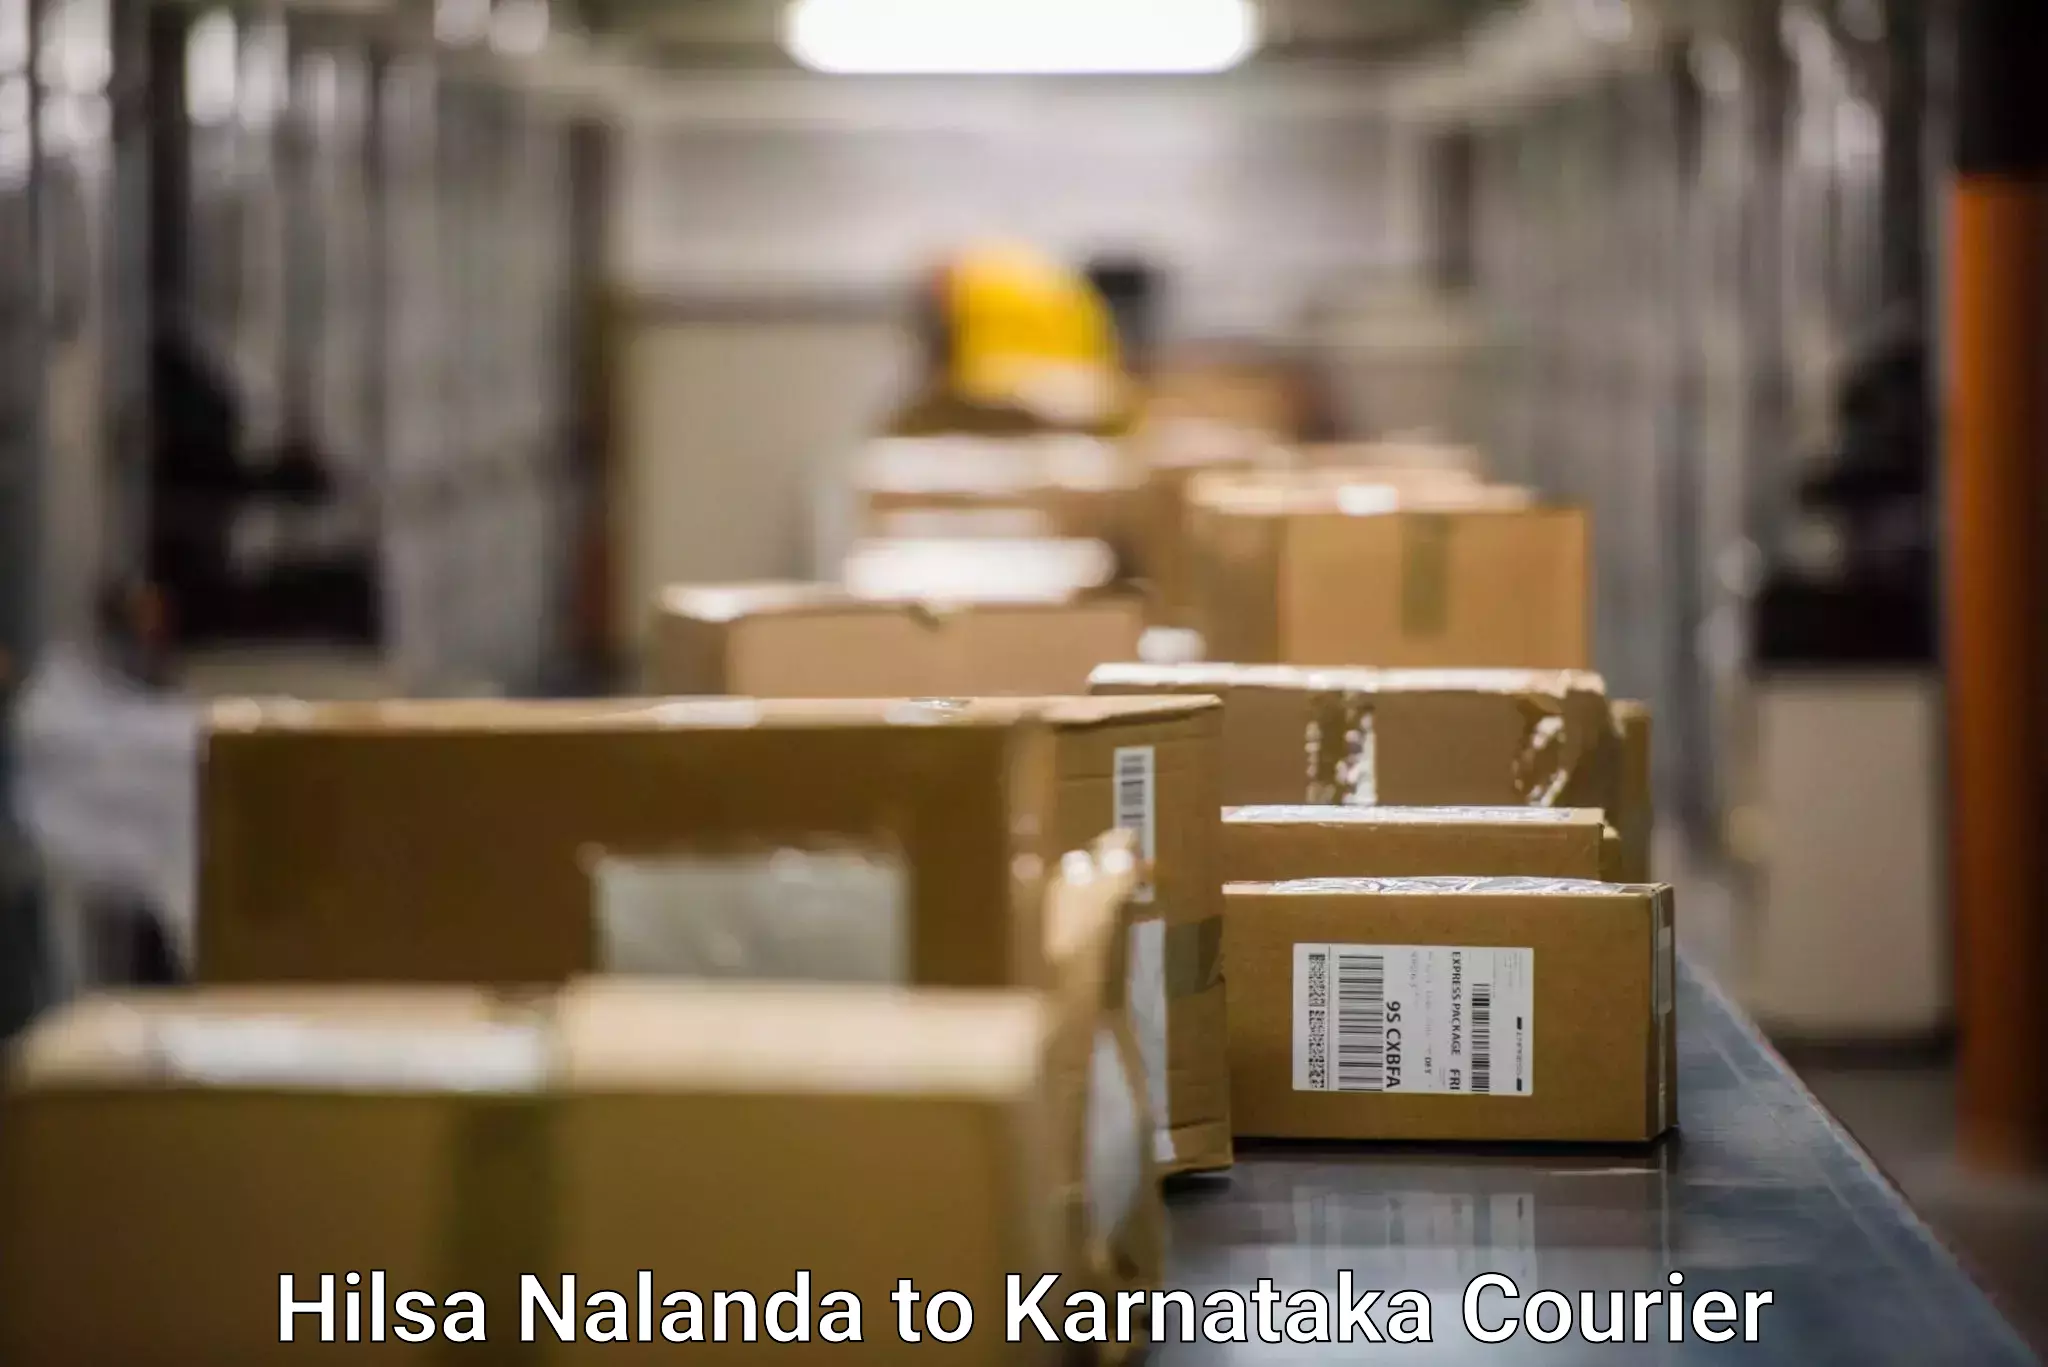 Automated parcel services Hilsa Nalanda to Yenepoya Mangalore